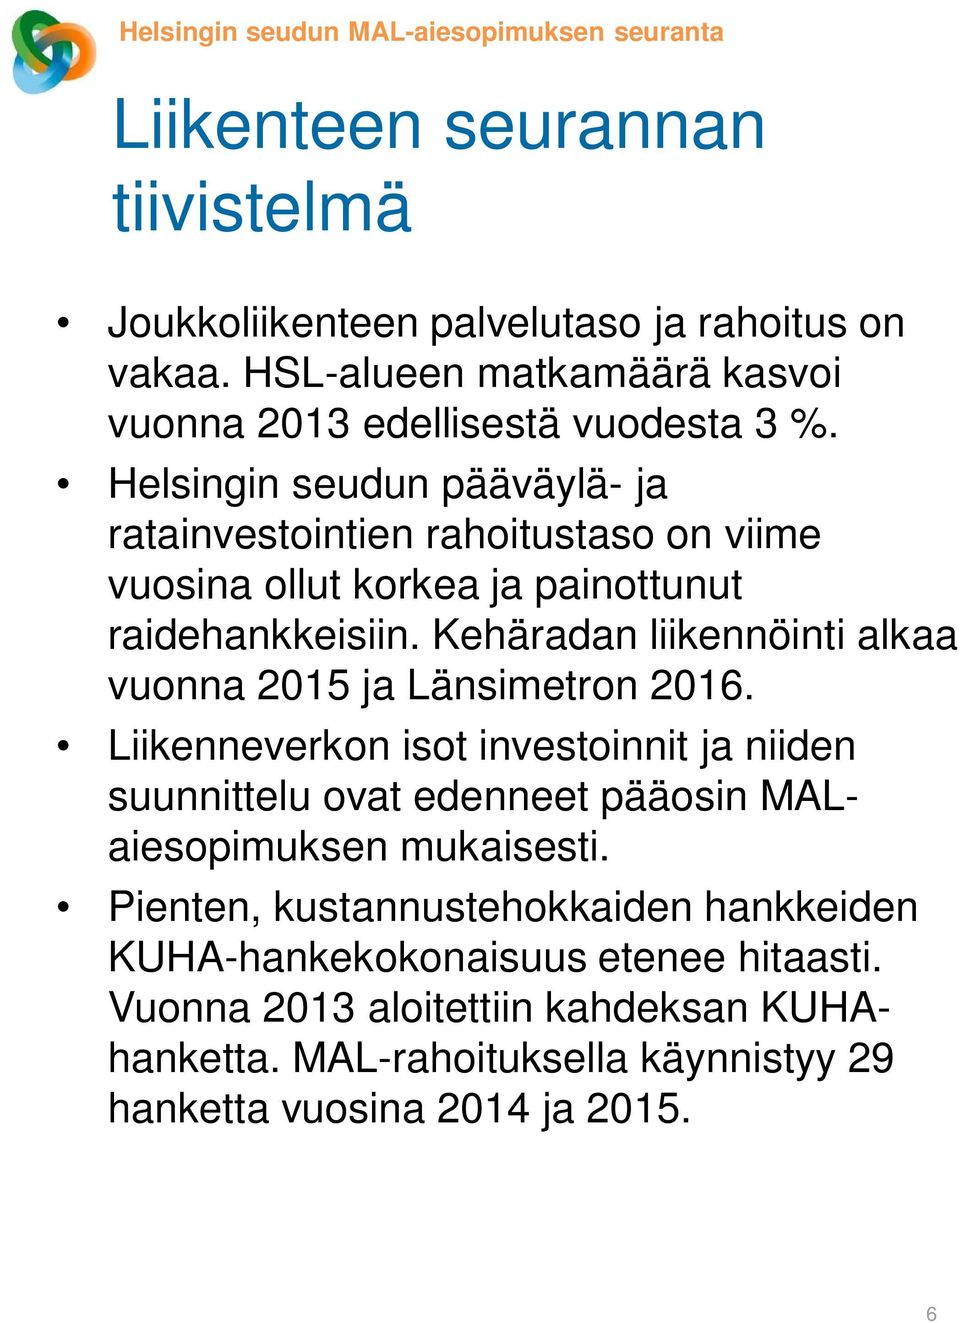 Helsingin seudun pääväylä- ja ratainvestointien rahoitustaso on viime vuosina ollut korkea ja painottunut raidehankkeisiin.